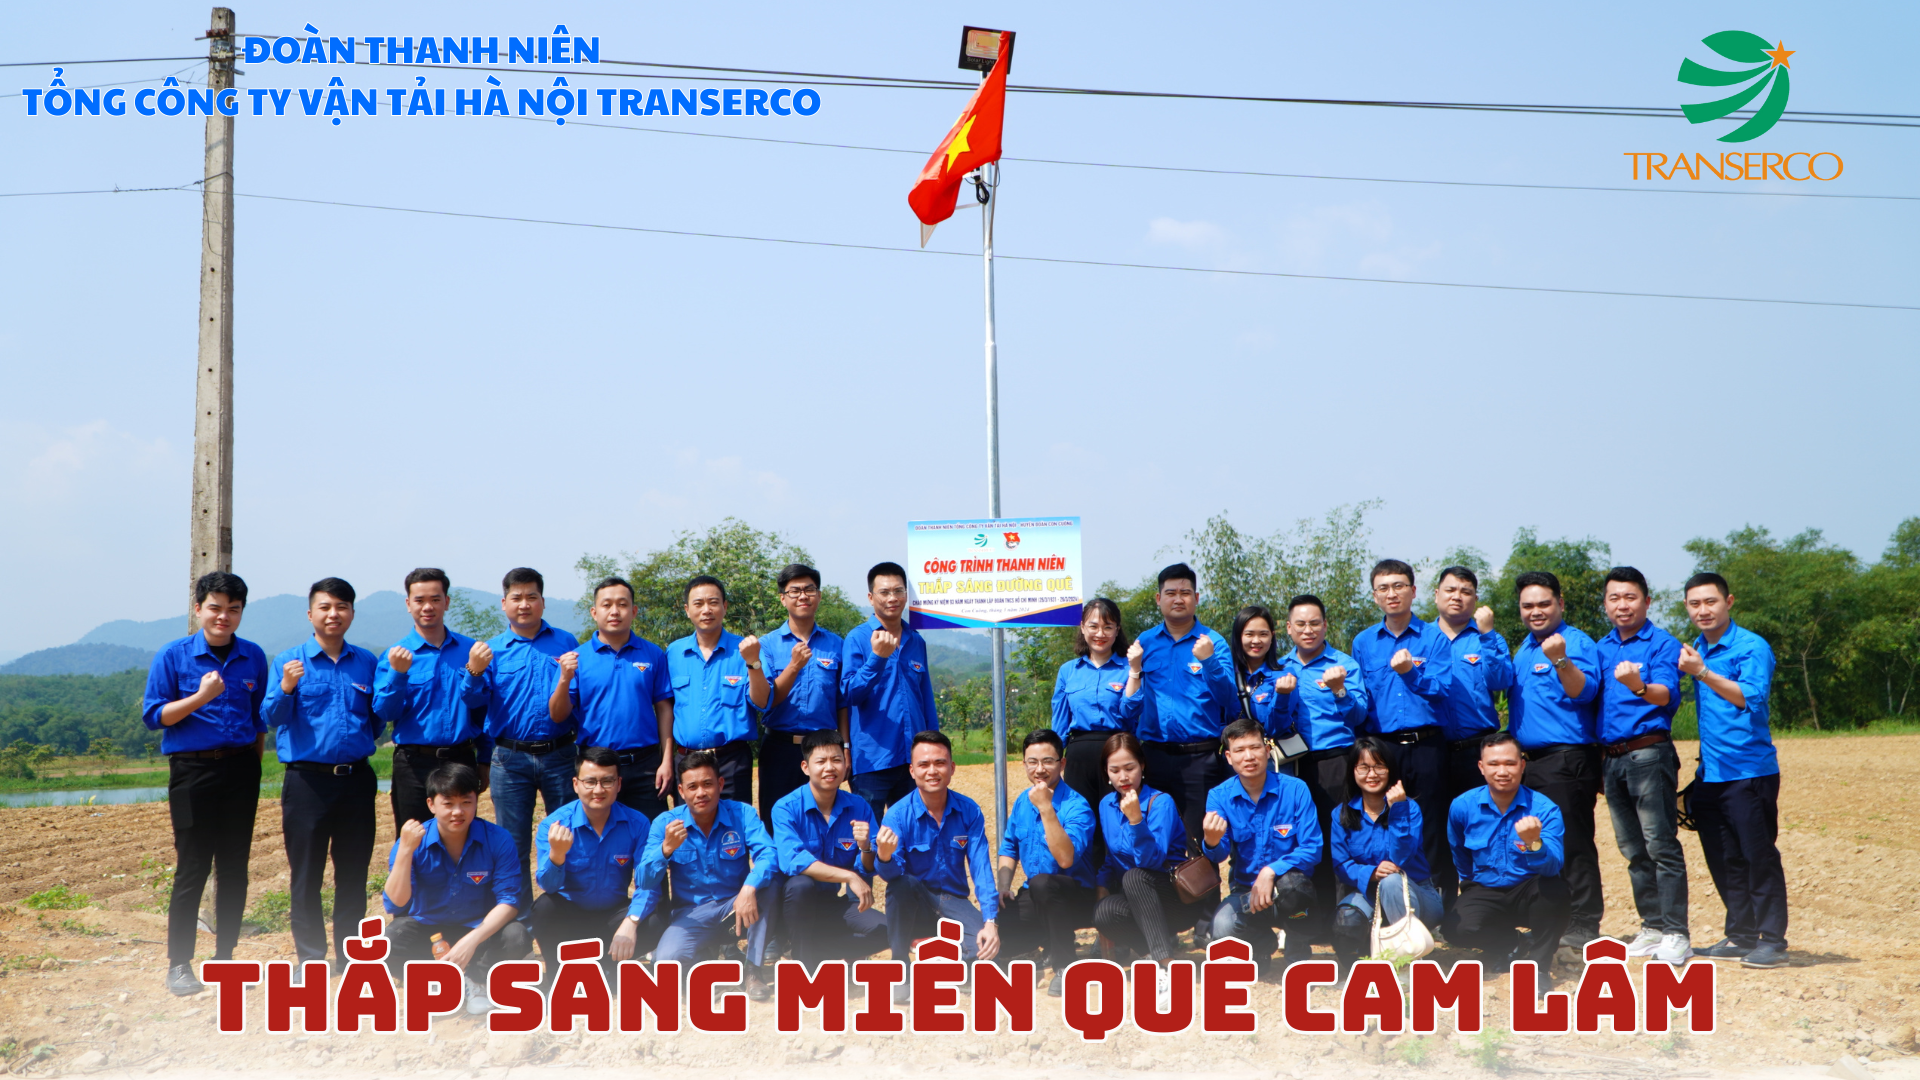 Tuổi trẻ Transerco thắp sáng miền quê Cam Lâm